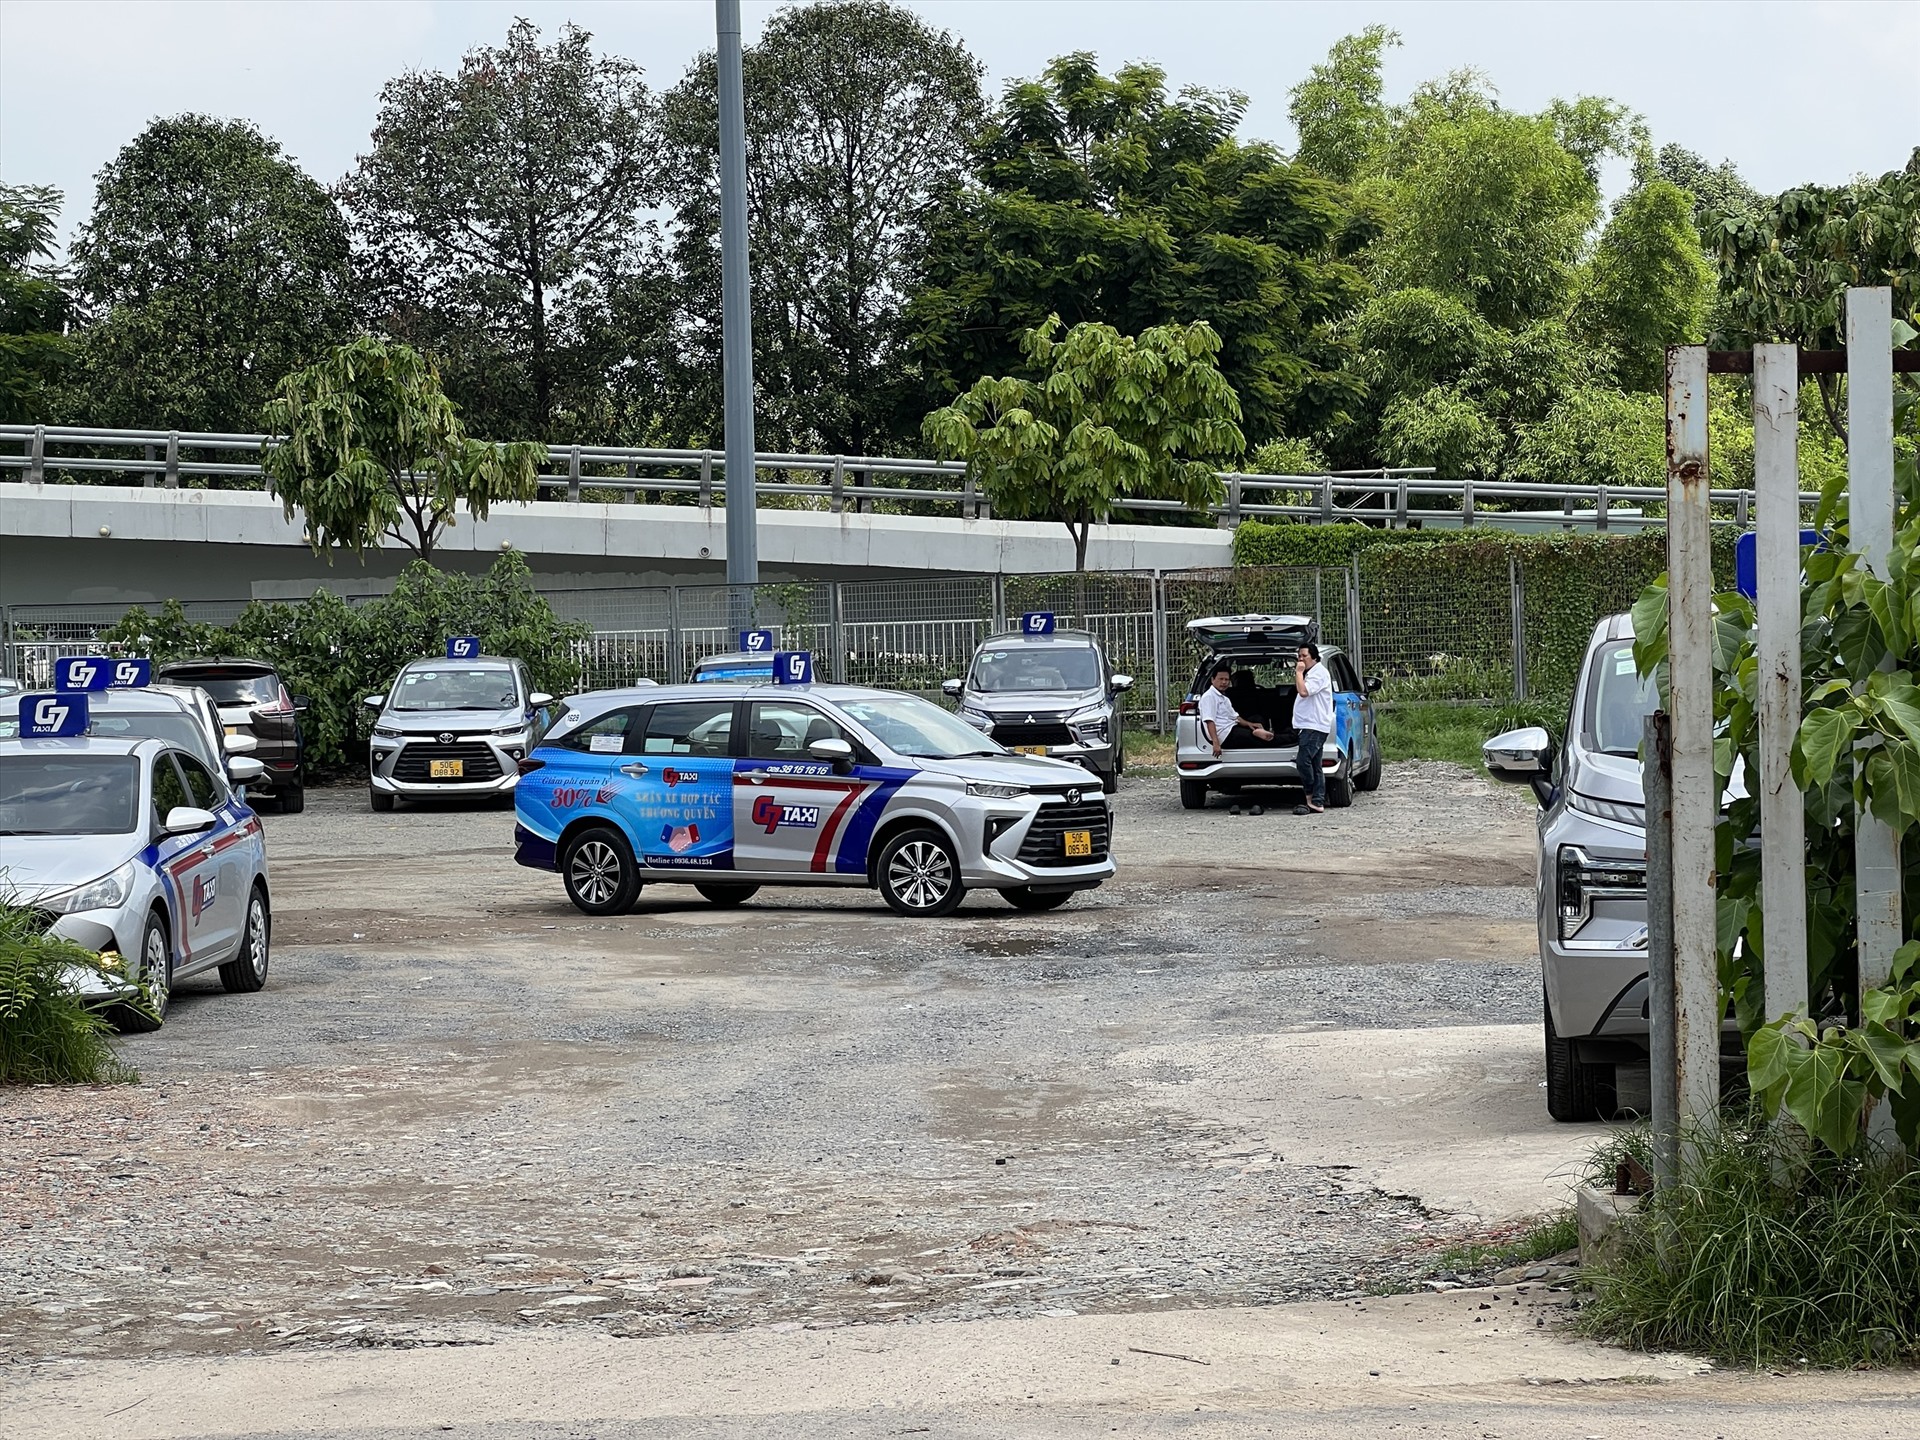 Theo ghi nhận của Lao Động ngày 6.7,  bãi đệm taxi bên cạnh sân bay Tân Sơn Nhất vẫn còn trống nhiều chỗ để taxi có thể dừng chờ khách, song các khu vực bên ngoài vẫn còn nhiều taxi trong các con hẻm dân sinh.